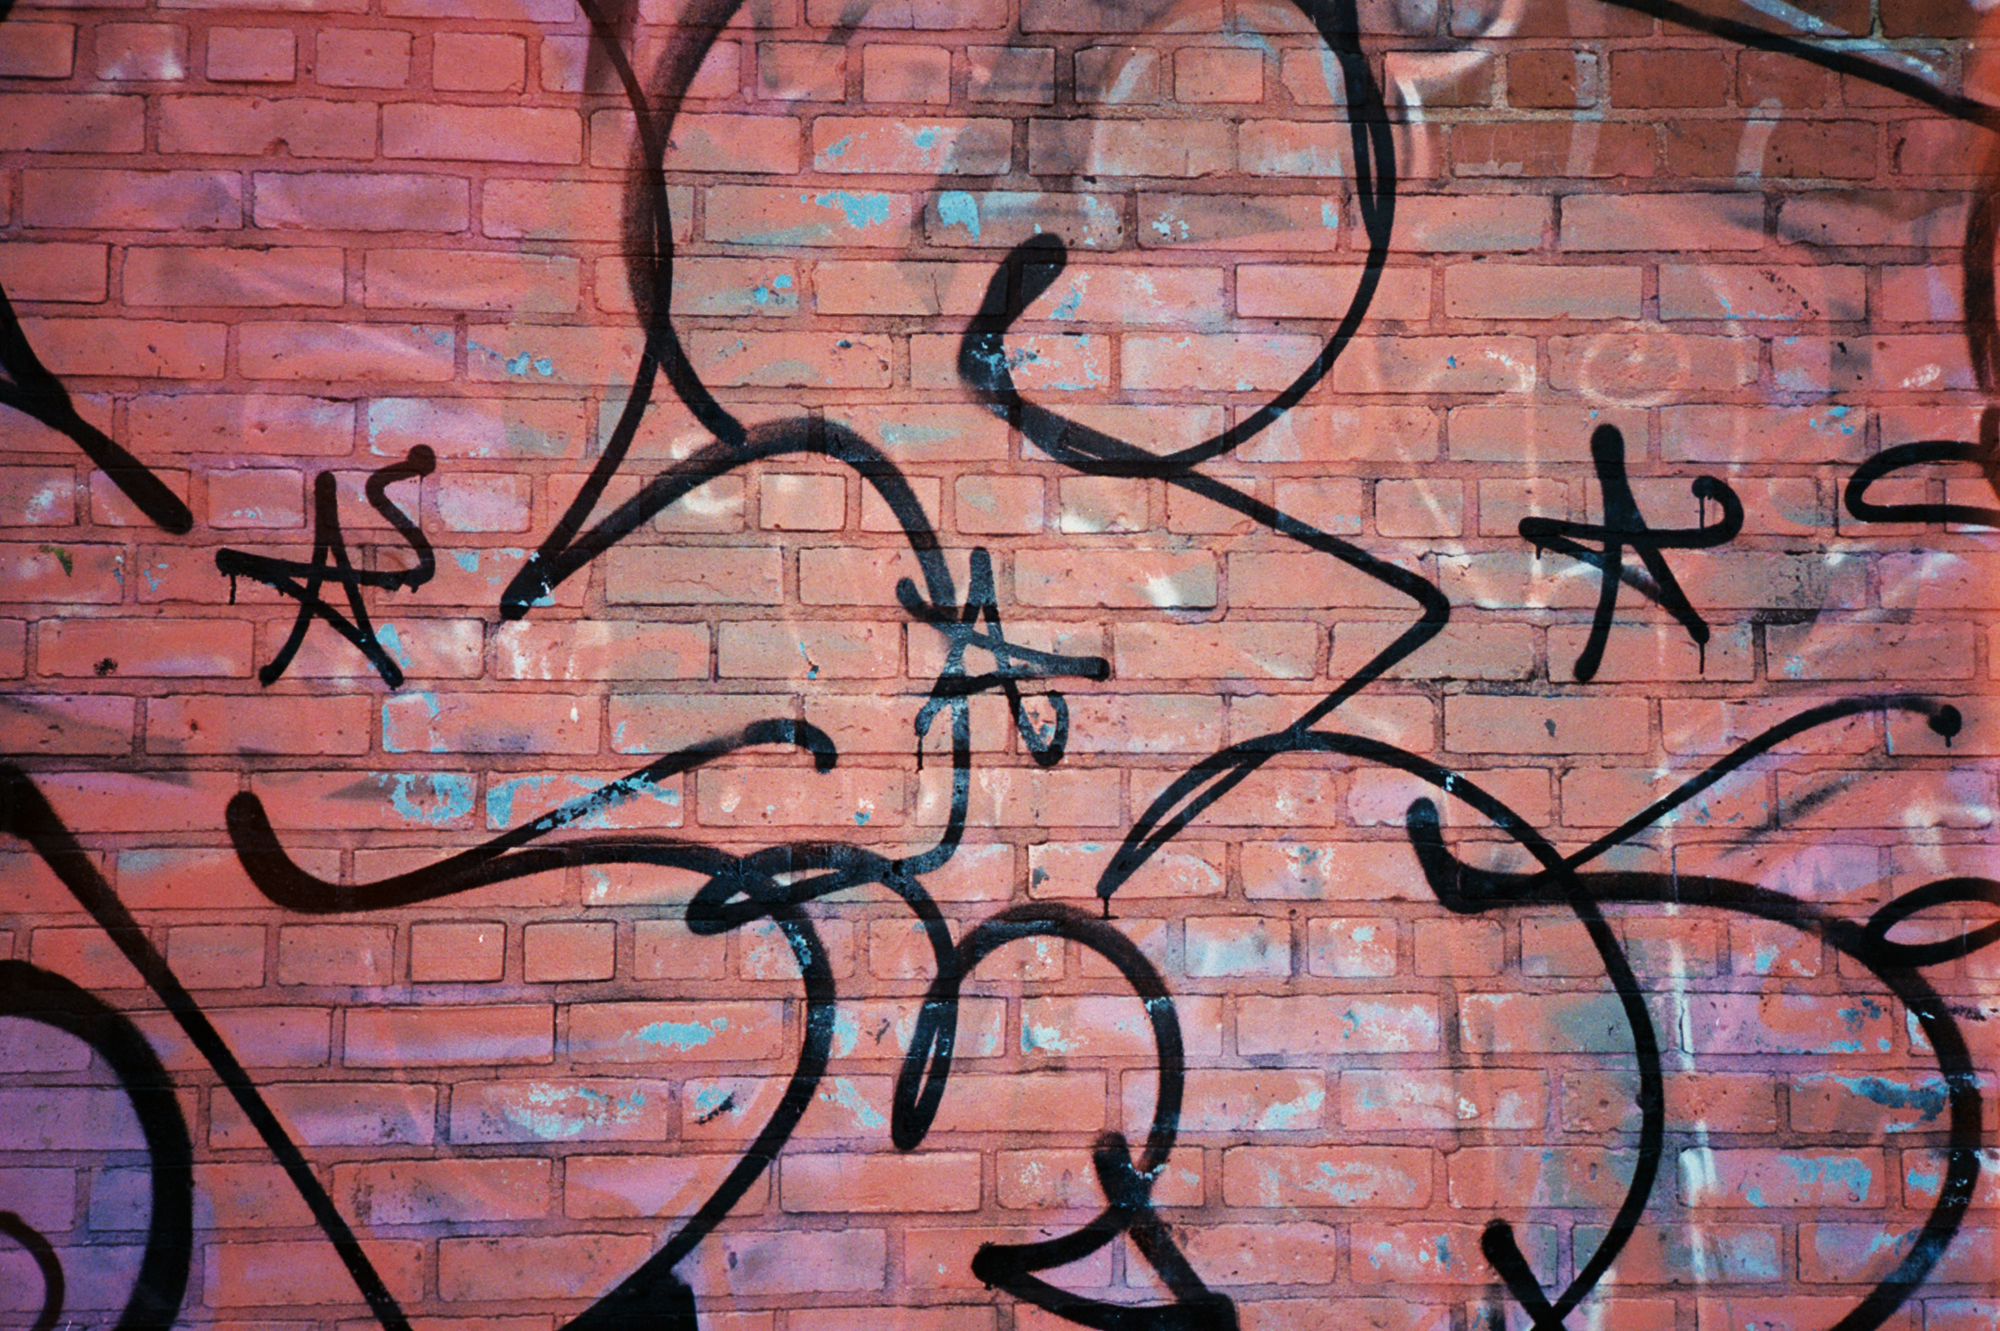 Ada Jane McNulty Avenue A Graffiti